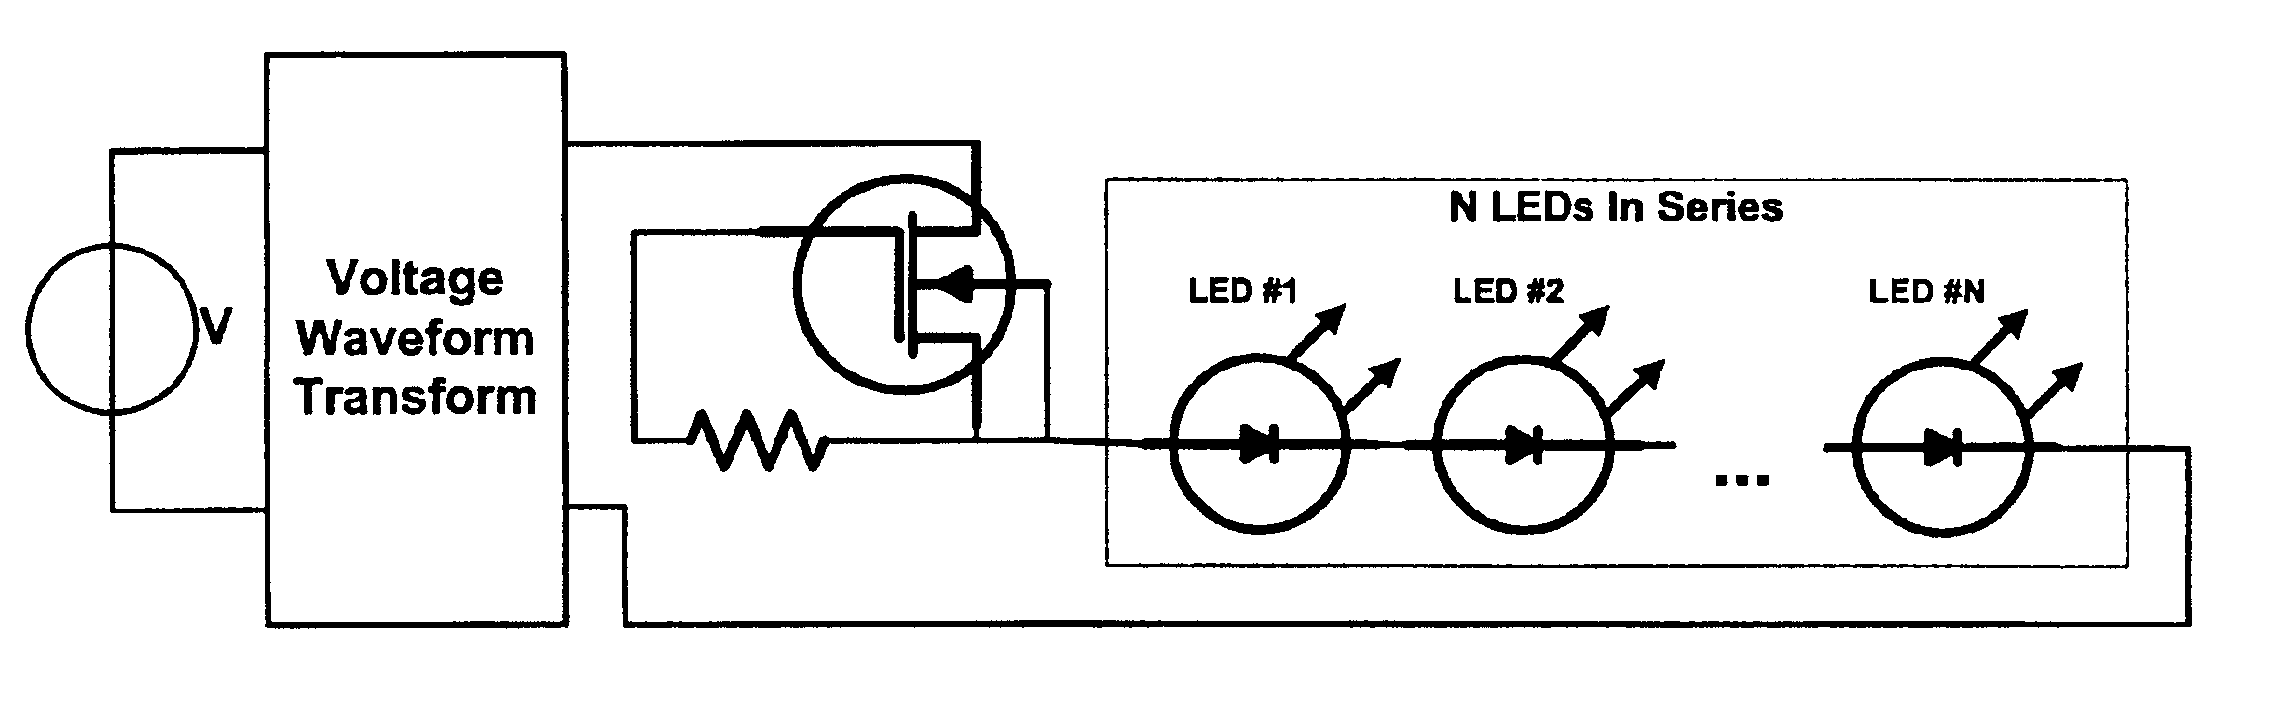 FET current regulation of LEDs